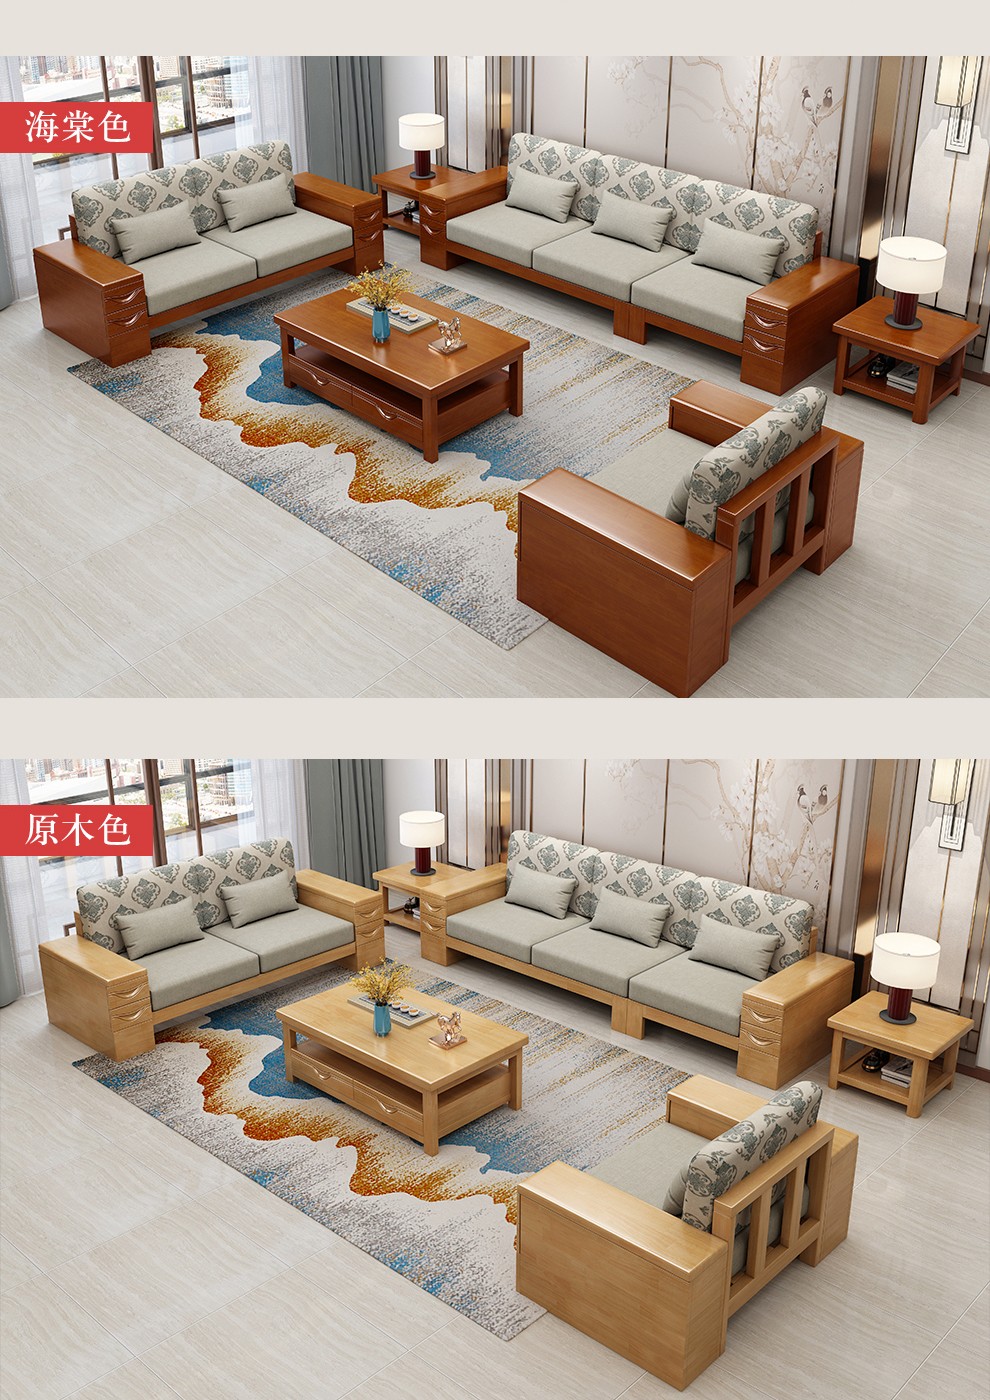 冕尊组合木加布沙发123客厅家具大户型新款中式橡胶实木家私储物冬夏